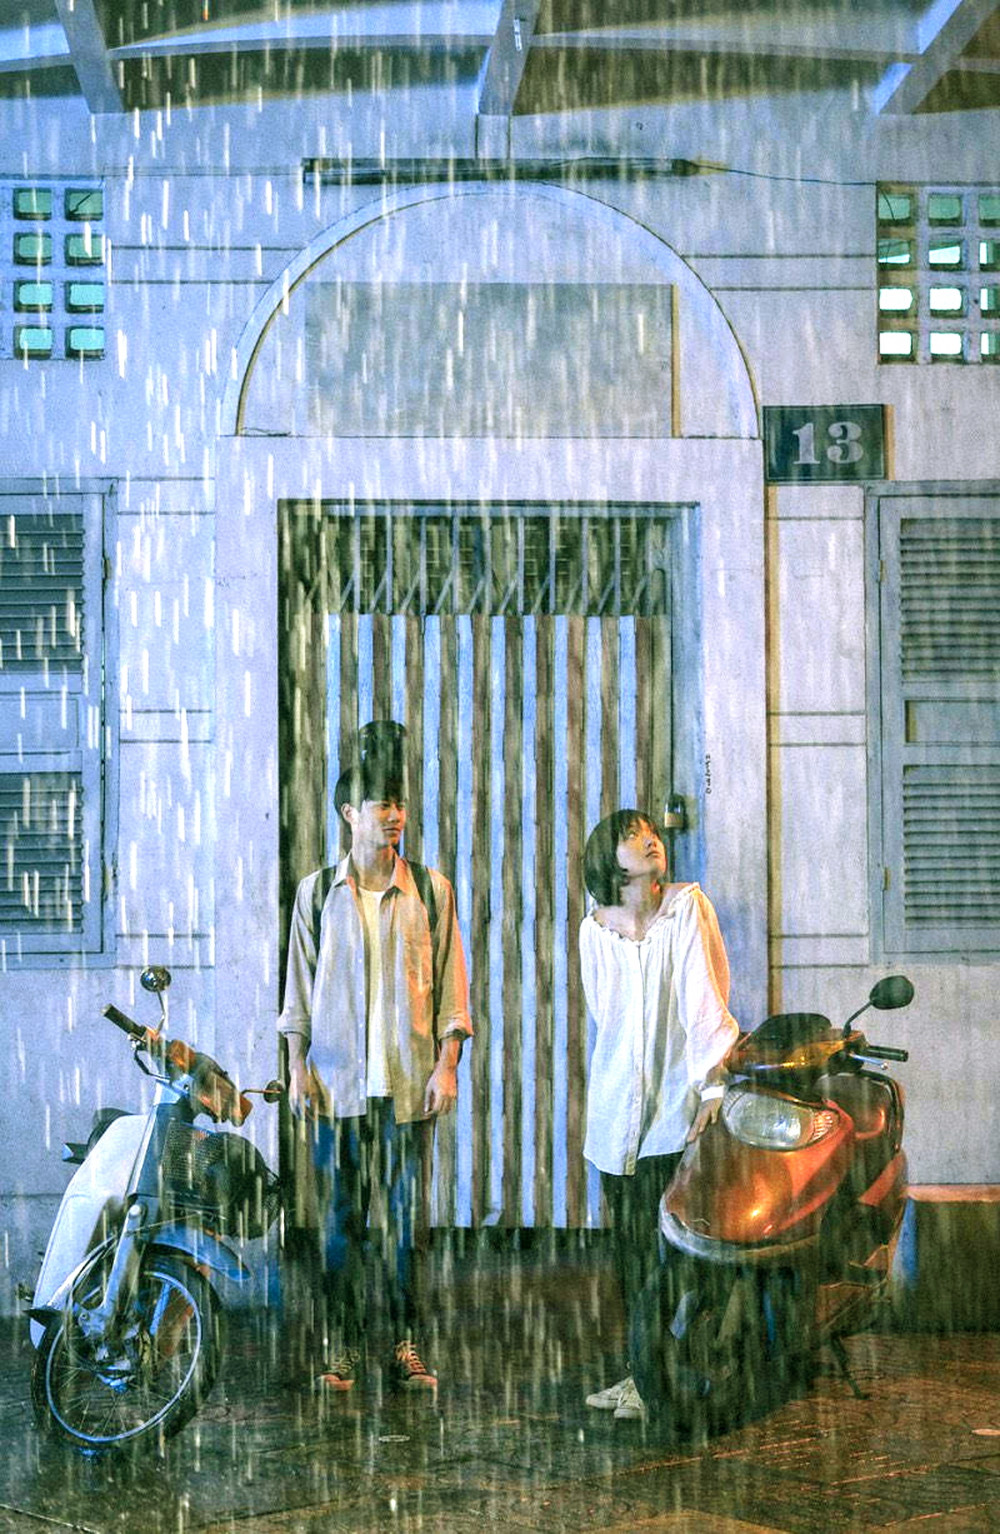 Sài Gòn trong cơn mưa để lại nhiều cảm xúc cho người xem  khi đem “đặc sản” mưa Sài Gòn lên màn ảnh